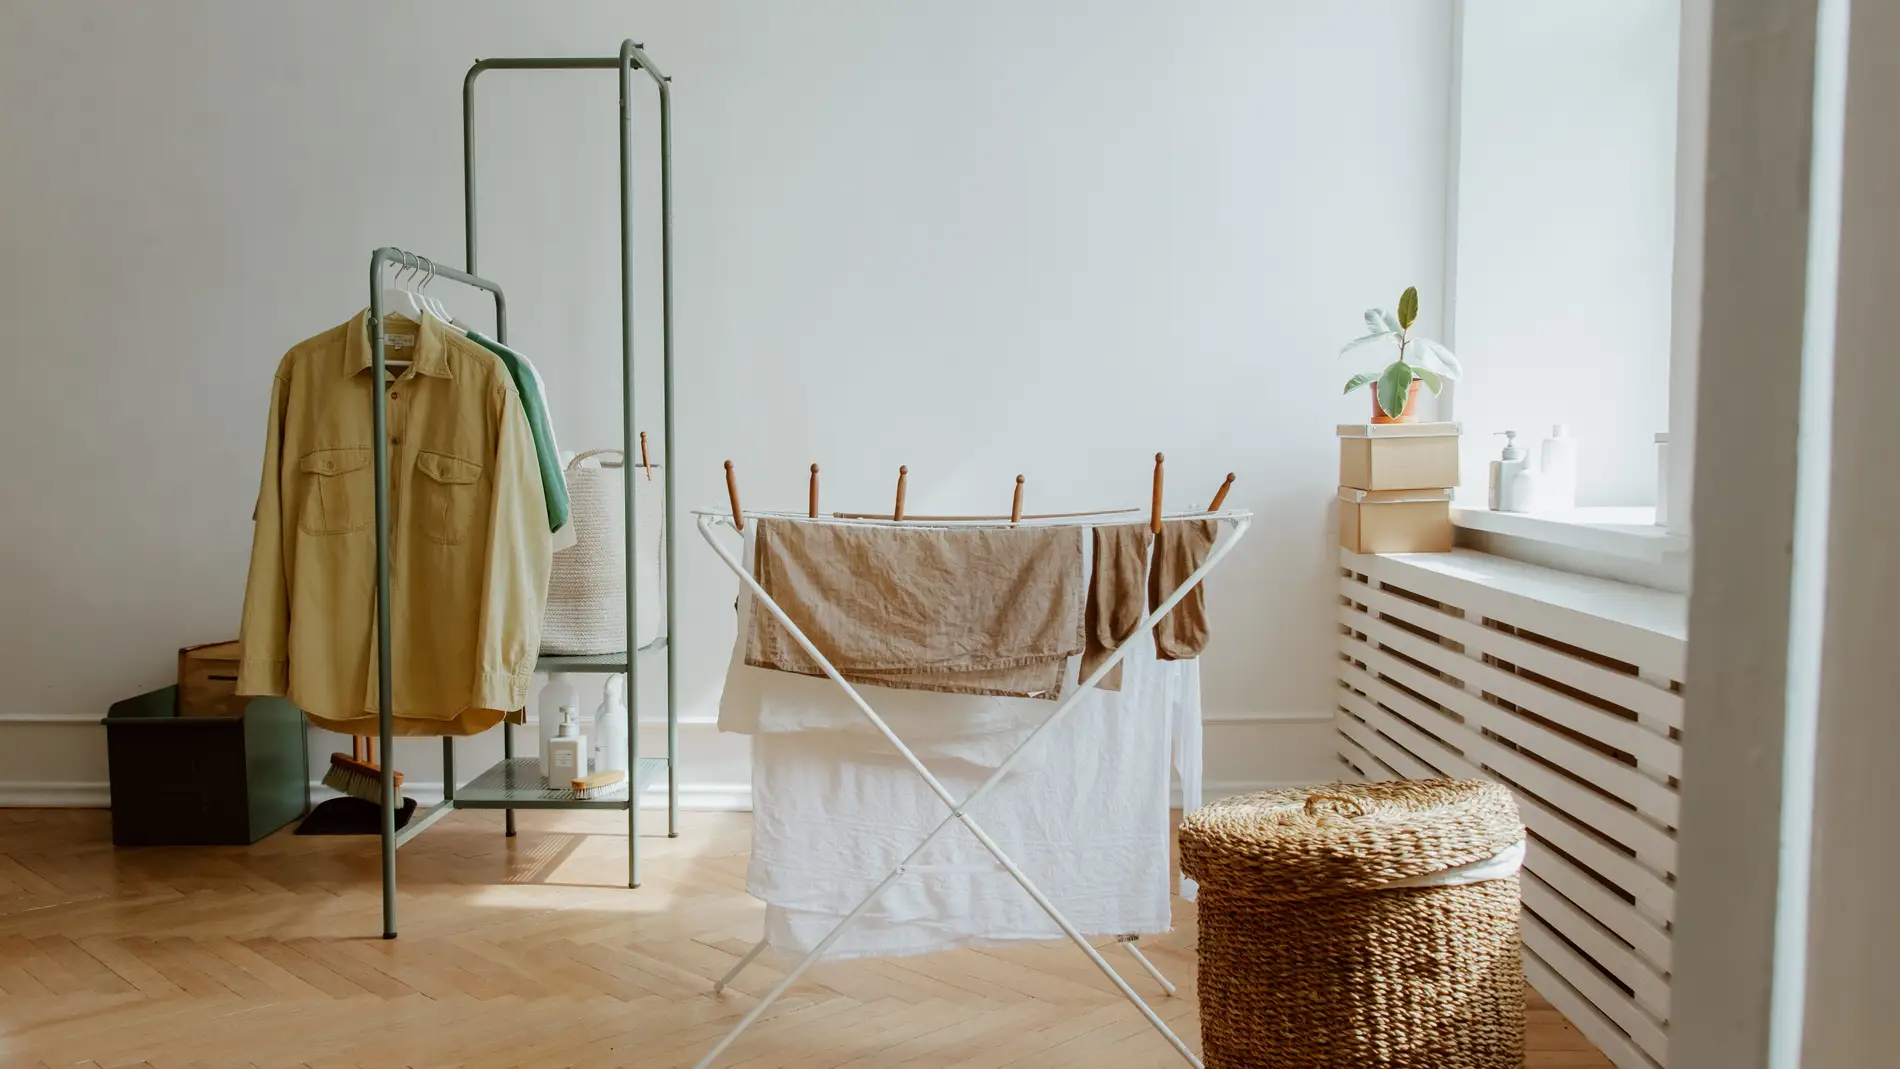 El método infalible para secar la ropa en cinco minutos sin secadora